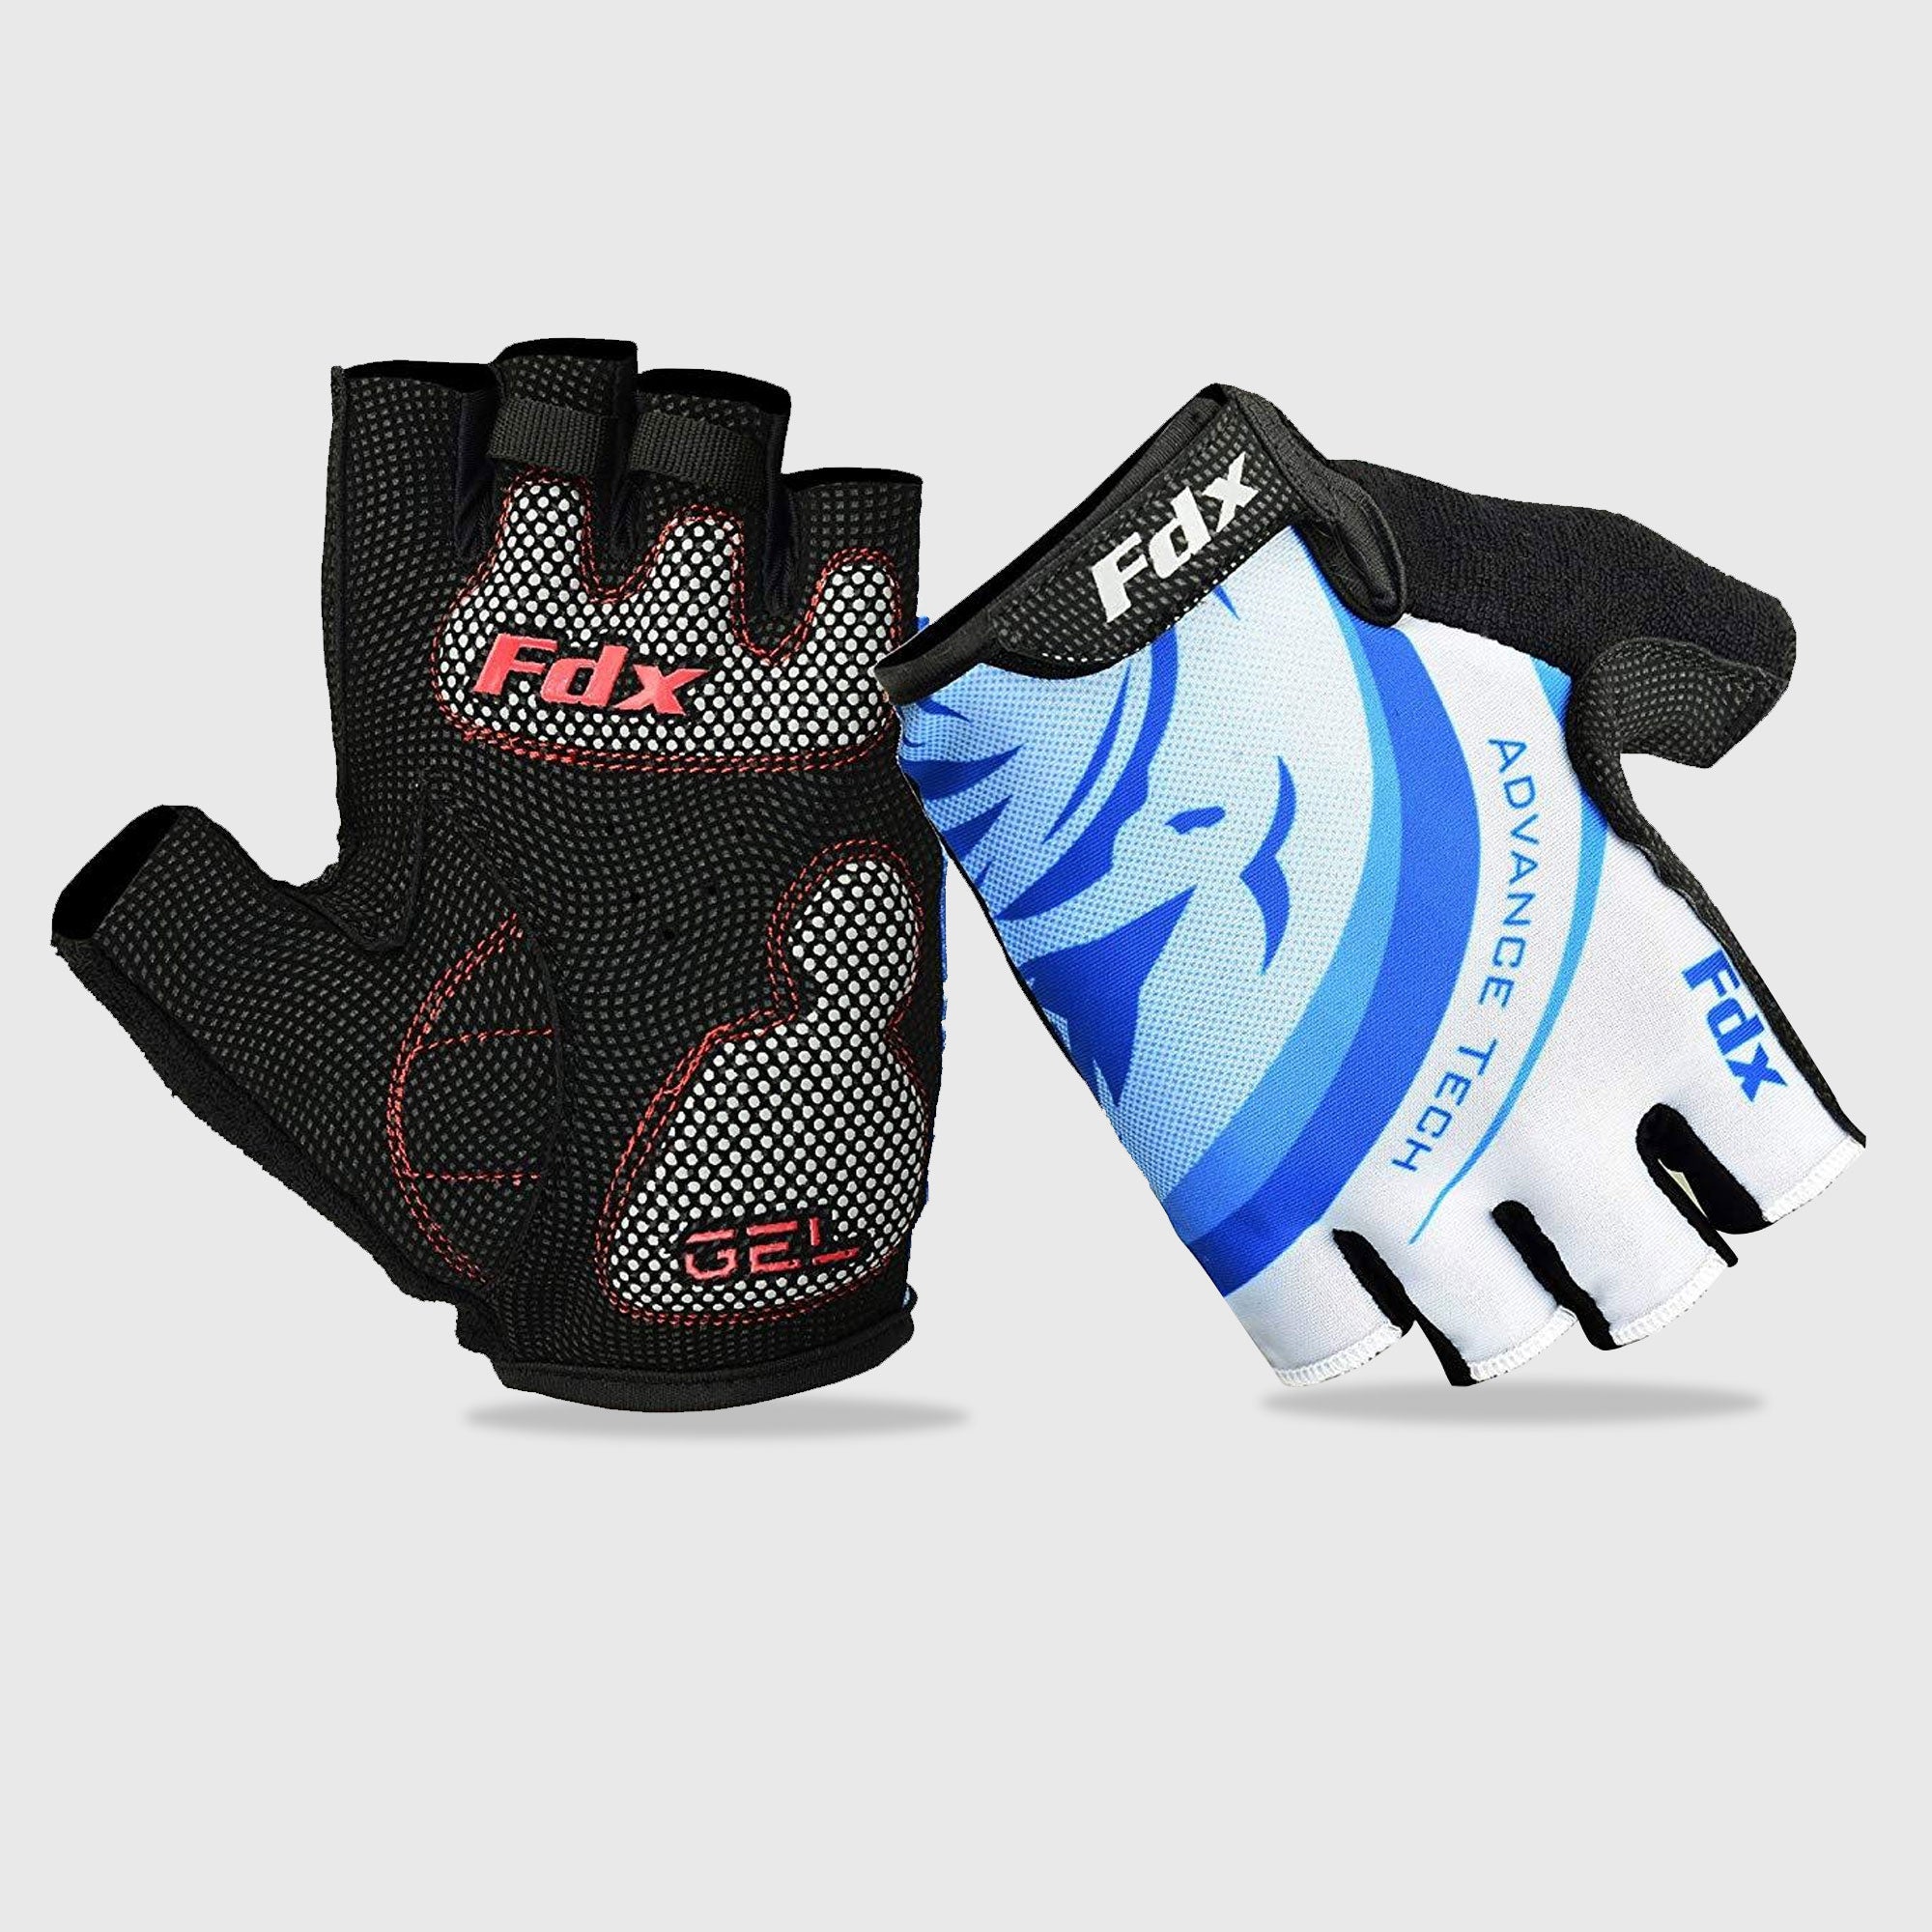 Fdx Delta White Gel Padded Fingerless Summer Cycling Gloves